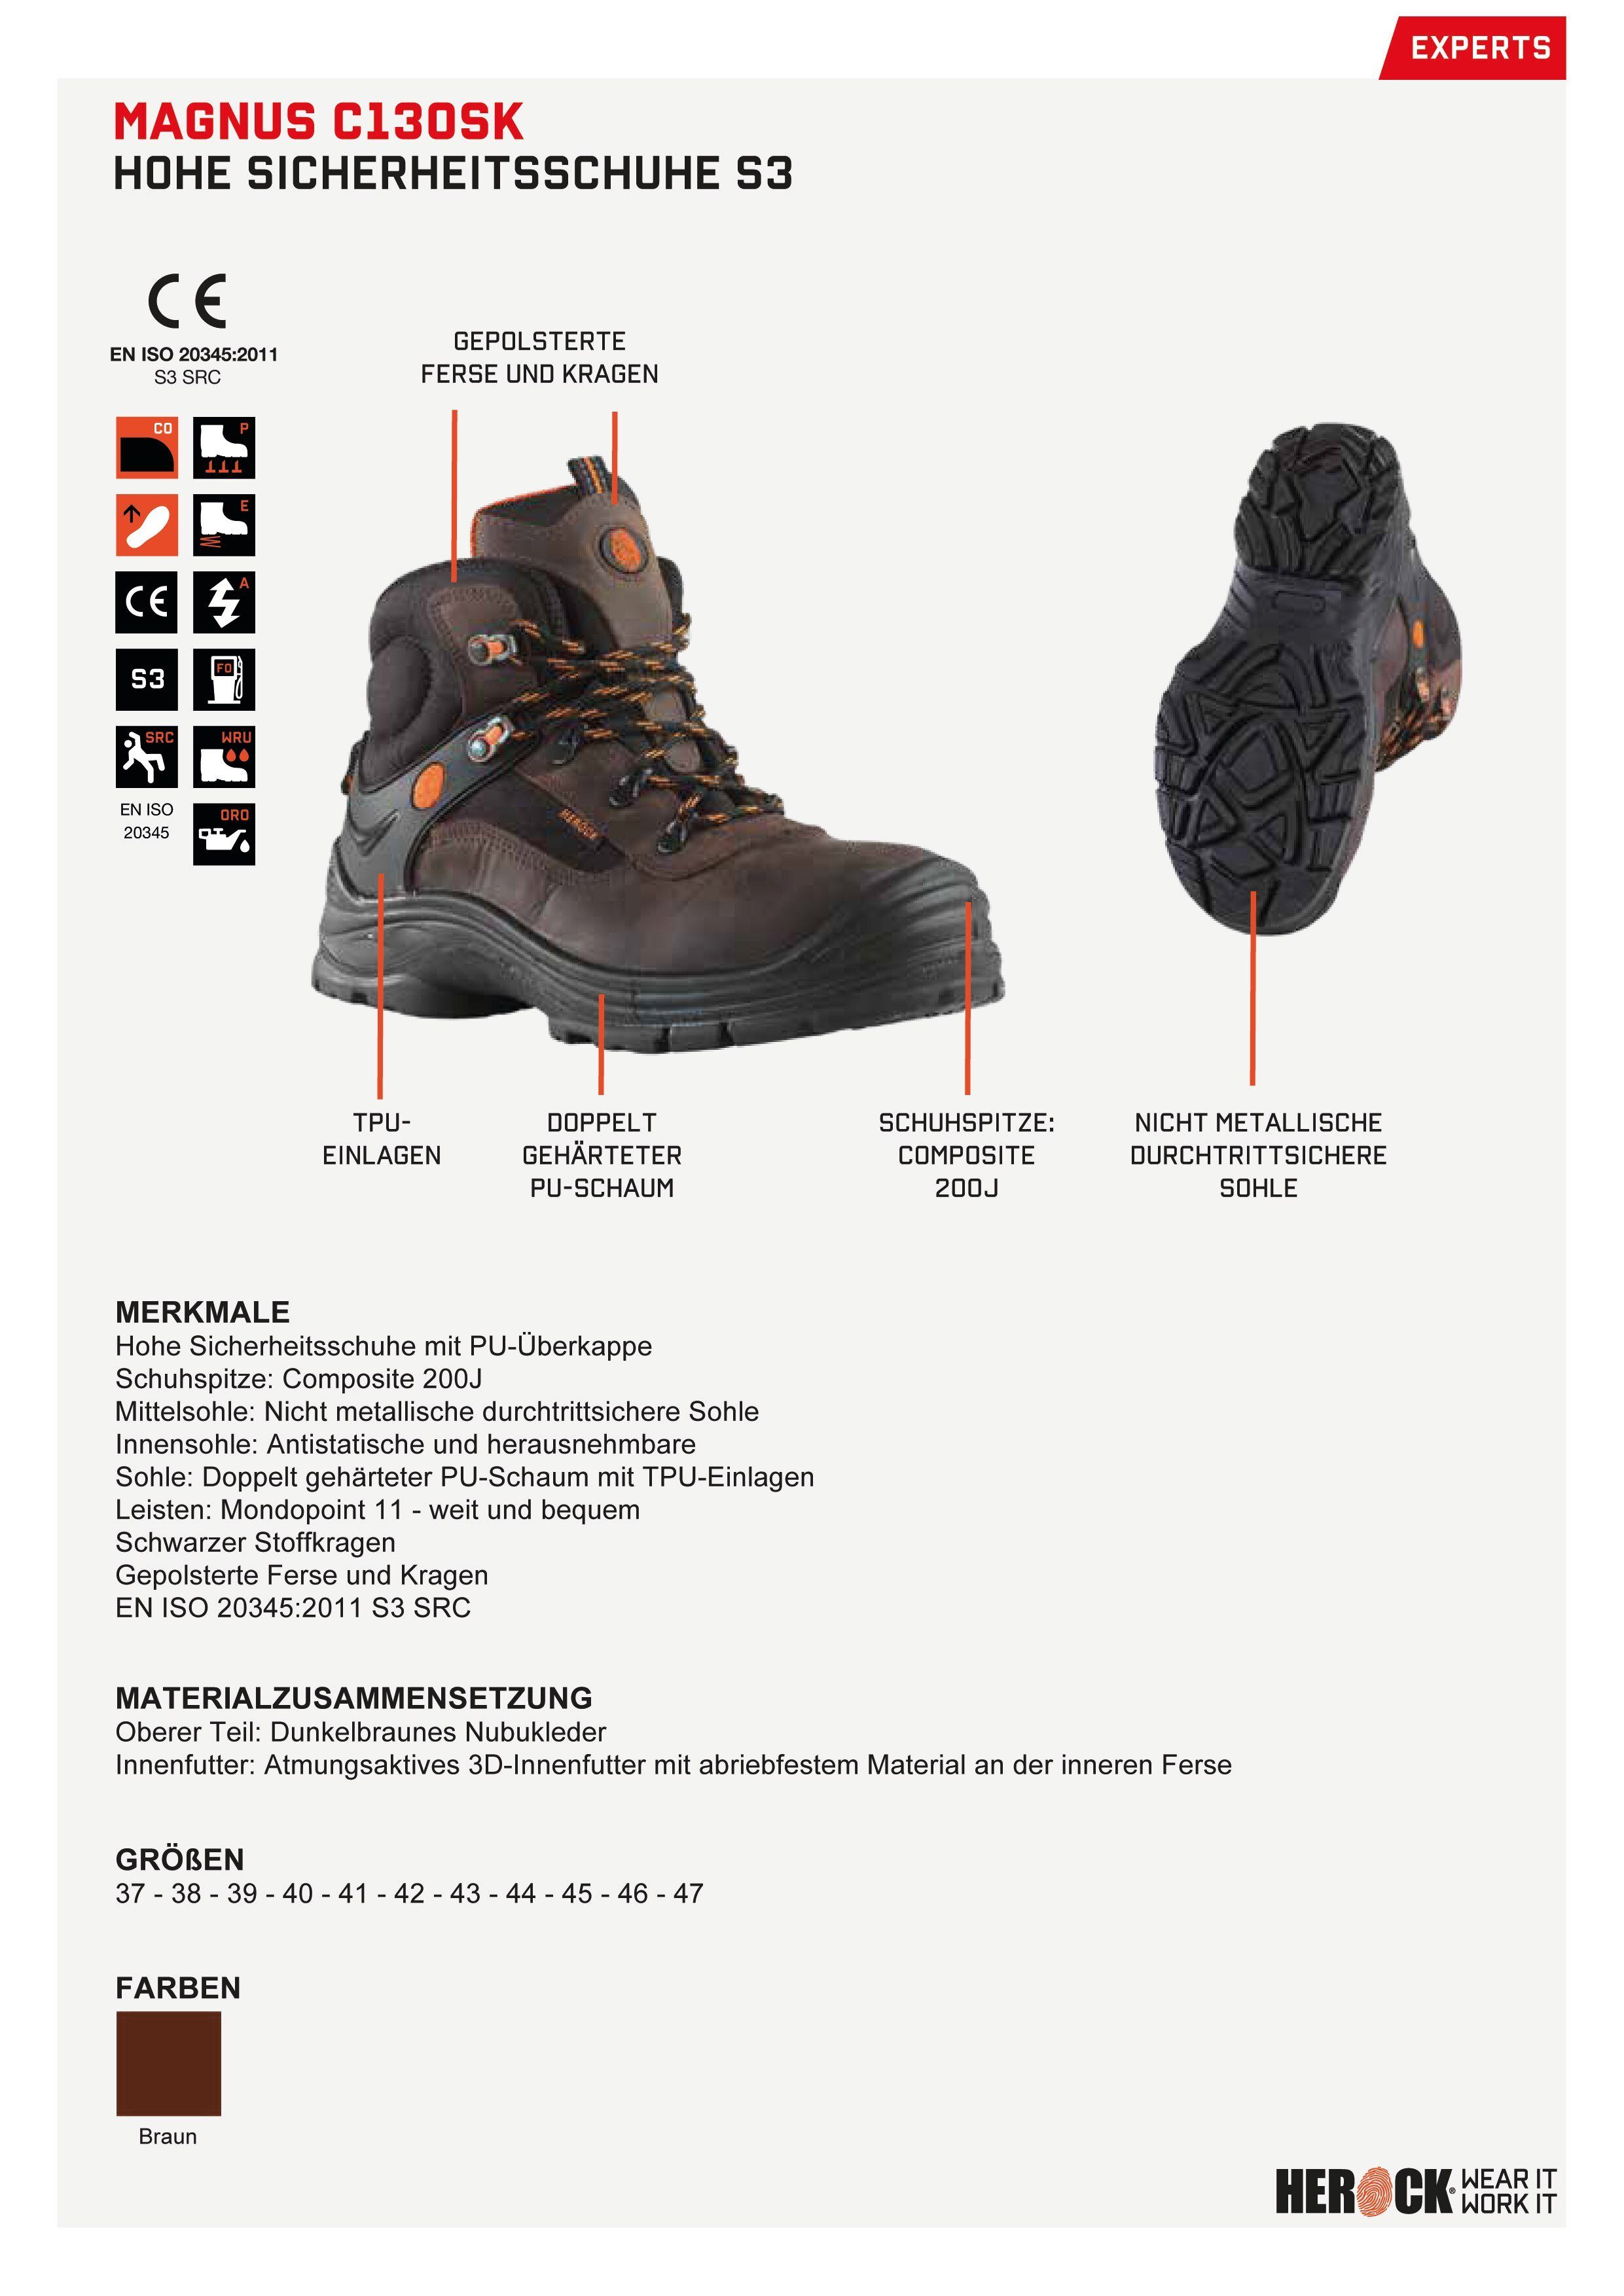 Magnus S3 nicht-metallisch, Leder, Sicherheitsschuh weit, S3 Herock High Schuhe Compo Echtes durchtrittsicher, Klasse